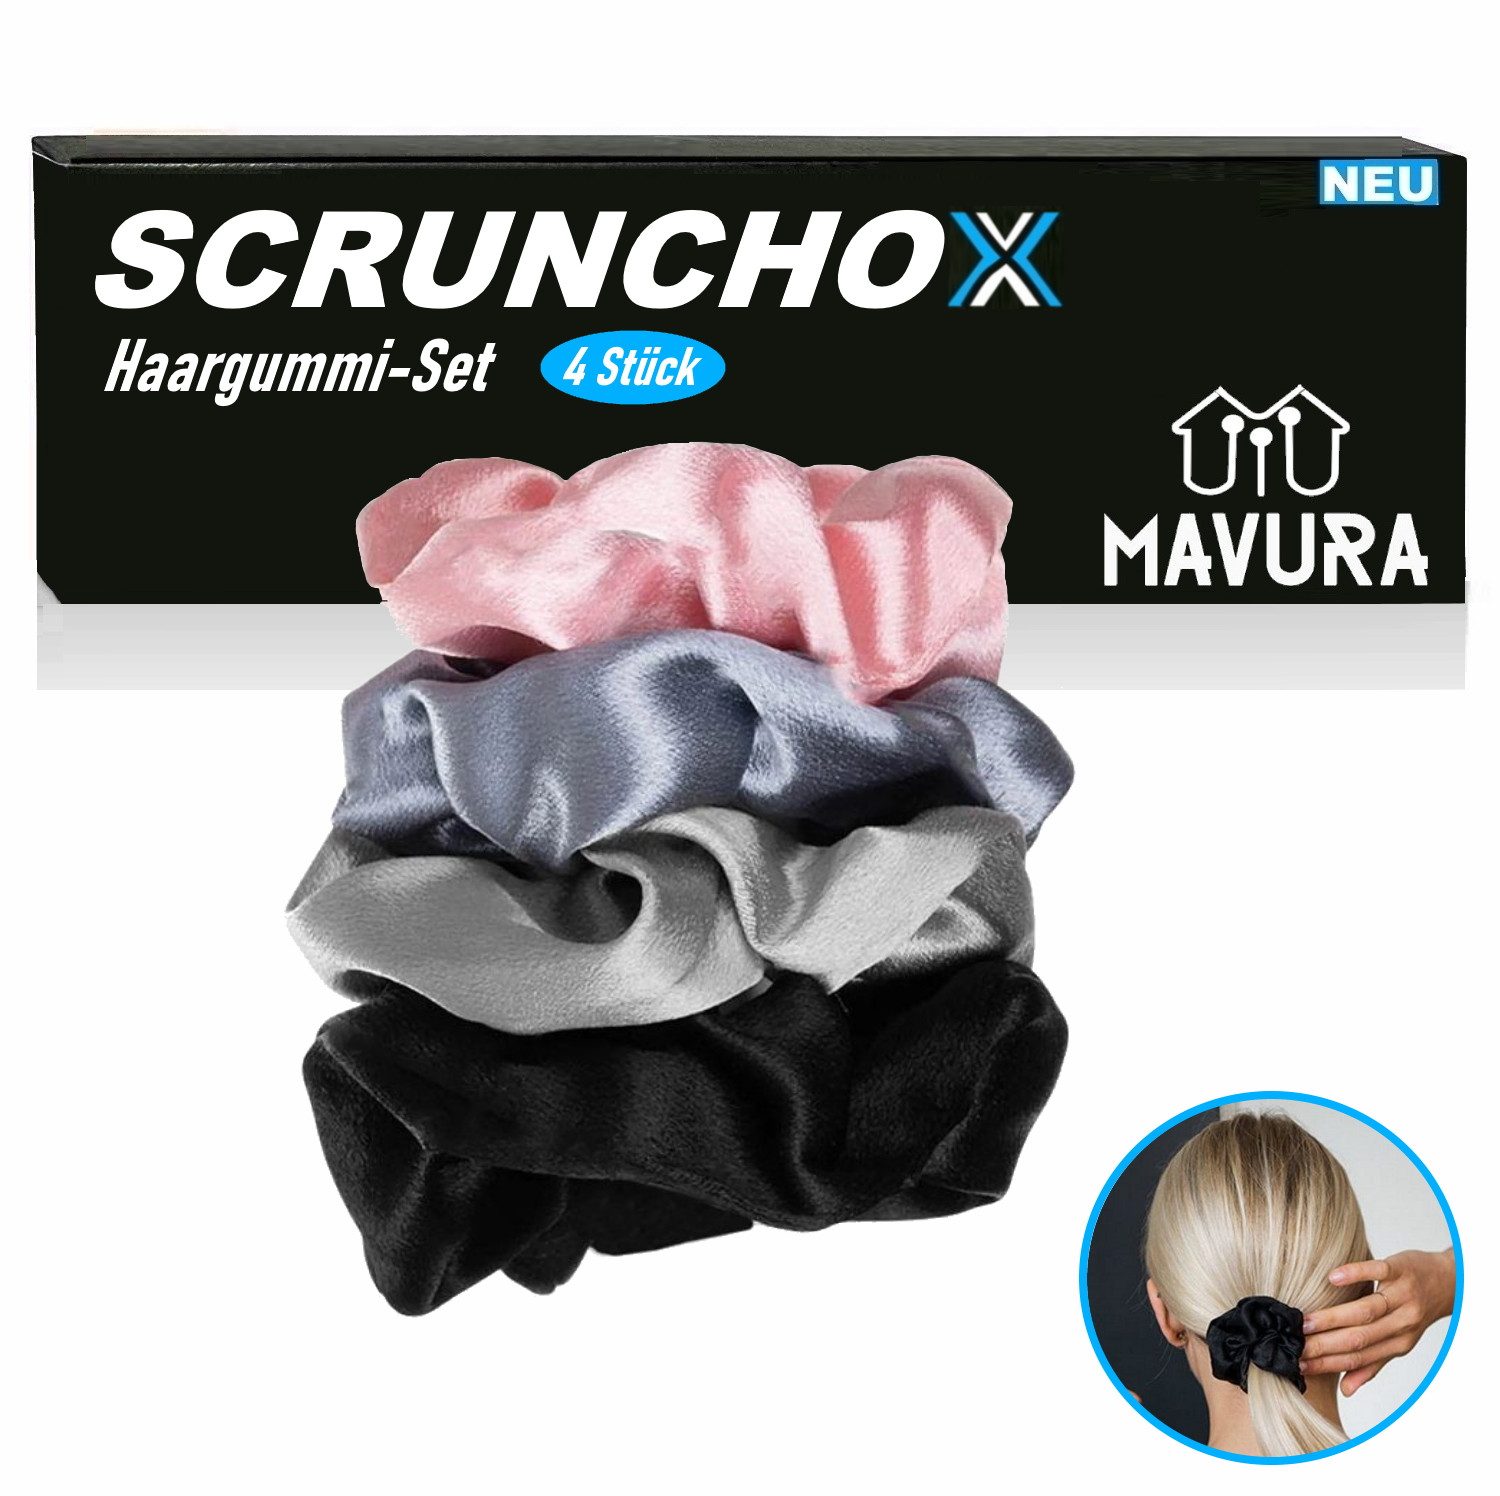 MAVURA Haargummi SCRUNCHOX Zopfhalter Scrunchies Set Haarband, Haarbänder Zopfgummi Zopfband elastisch [4er Set]